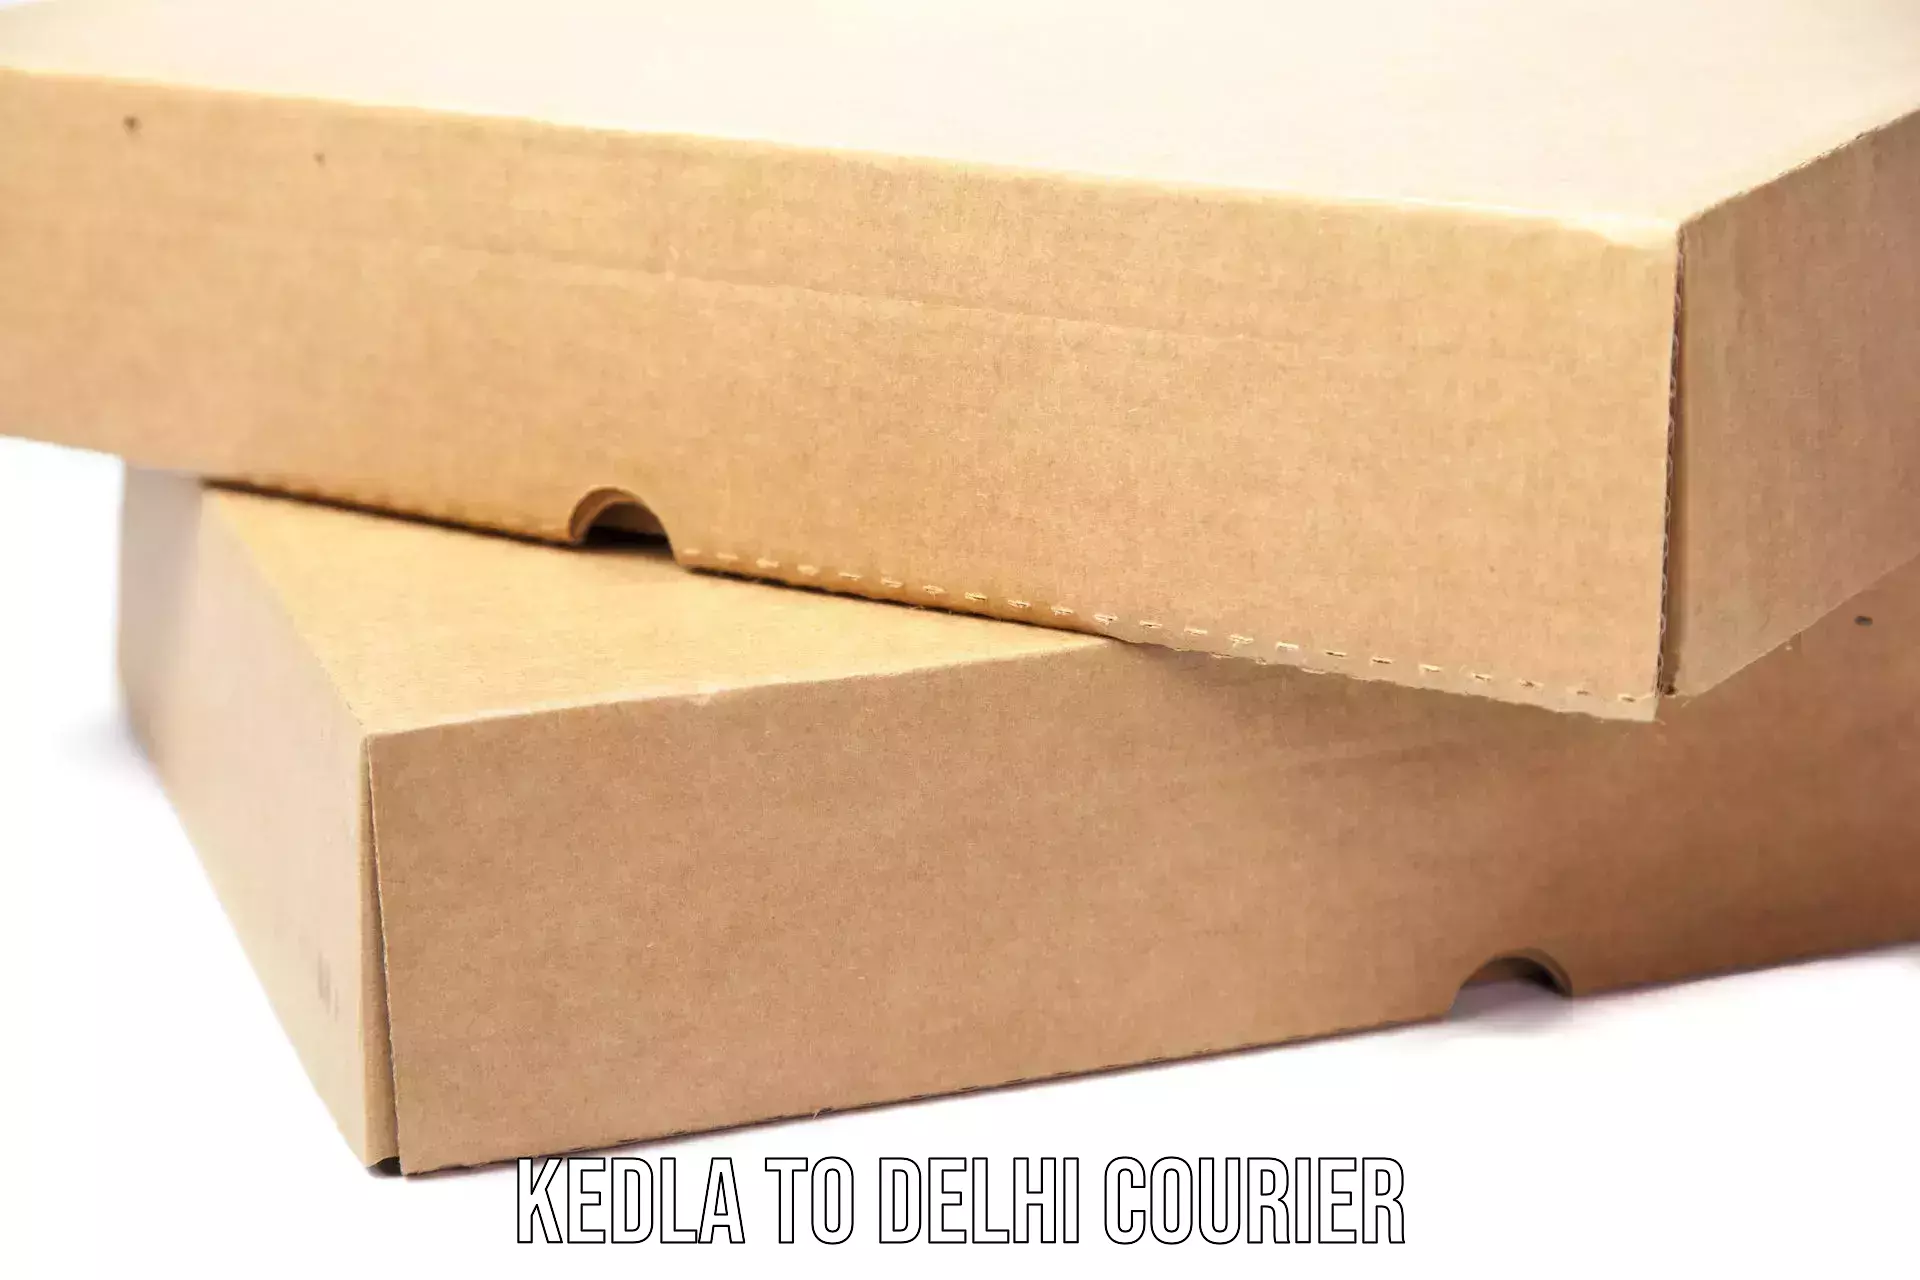 Seamless shipping experience Kedla to Delhi